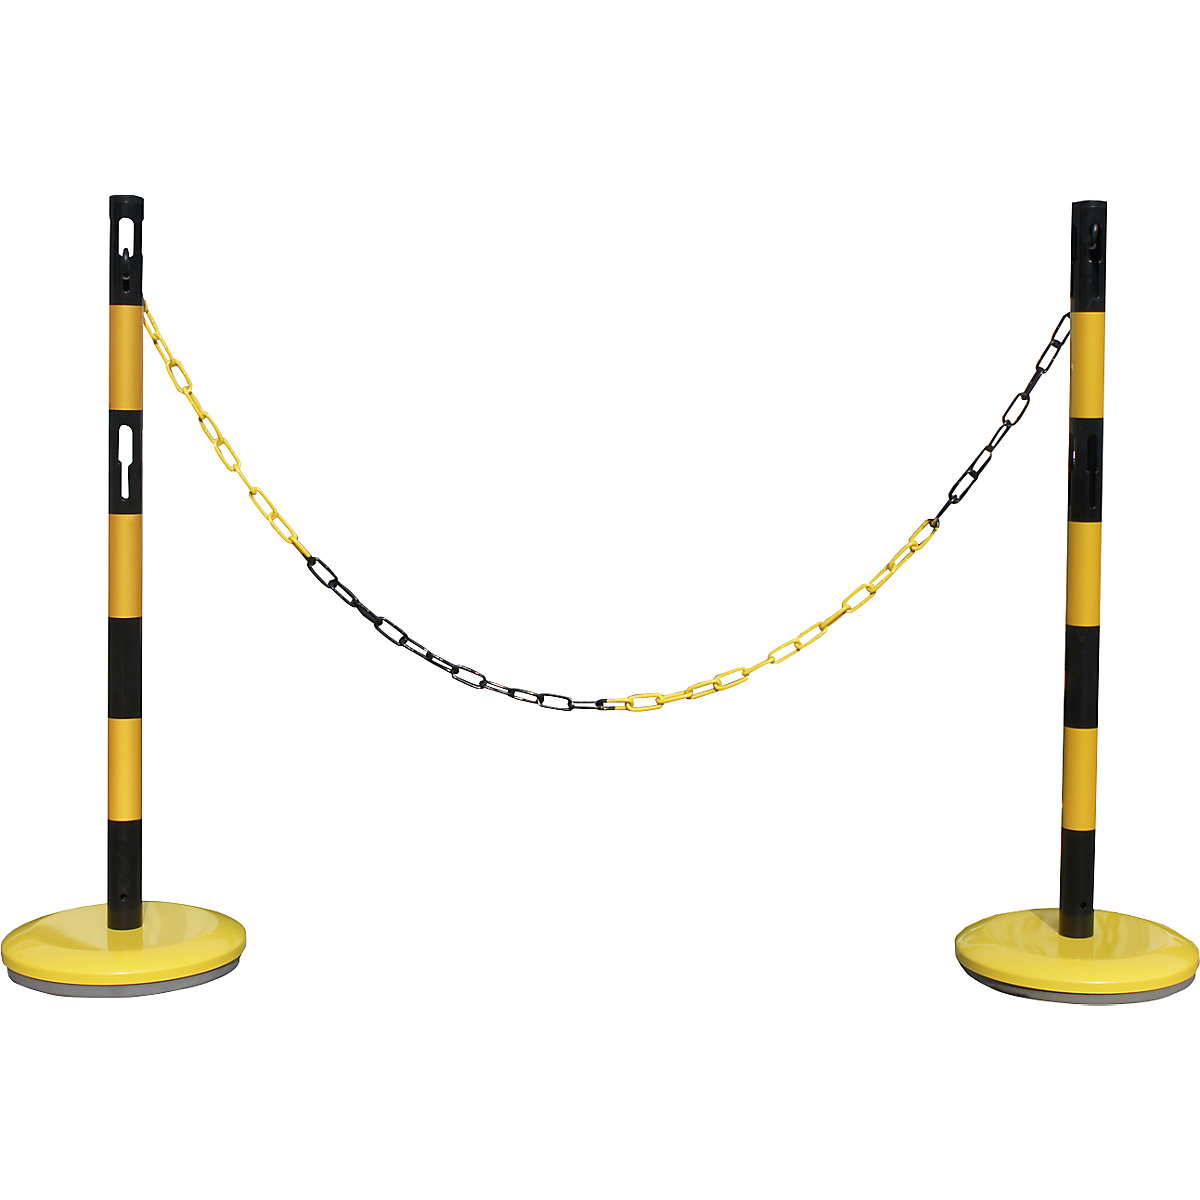 Zestaw słupków odgradzających z łańcuchem – VISO, 2 słupki, łańcuch 2,5 m, żółty / czarny-5